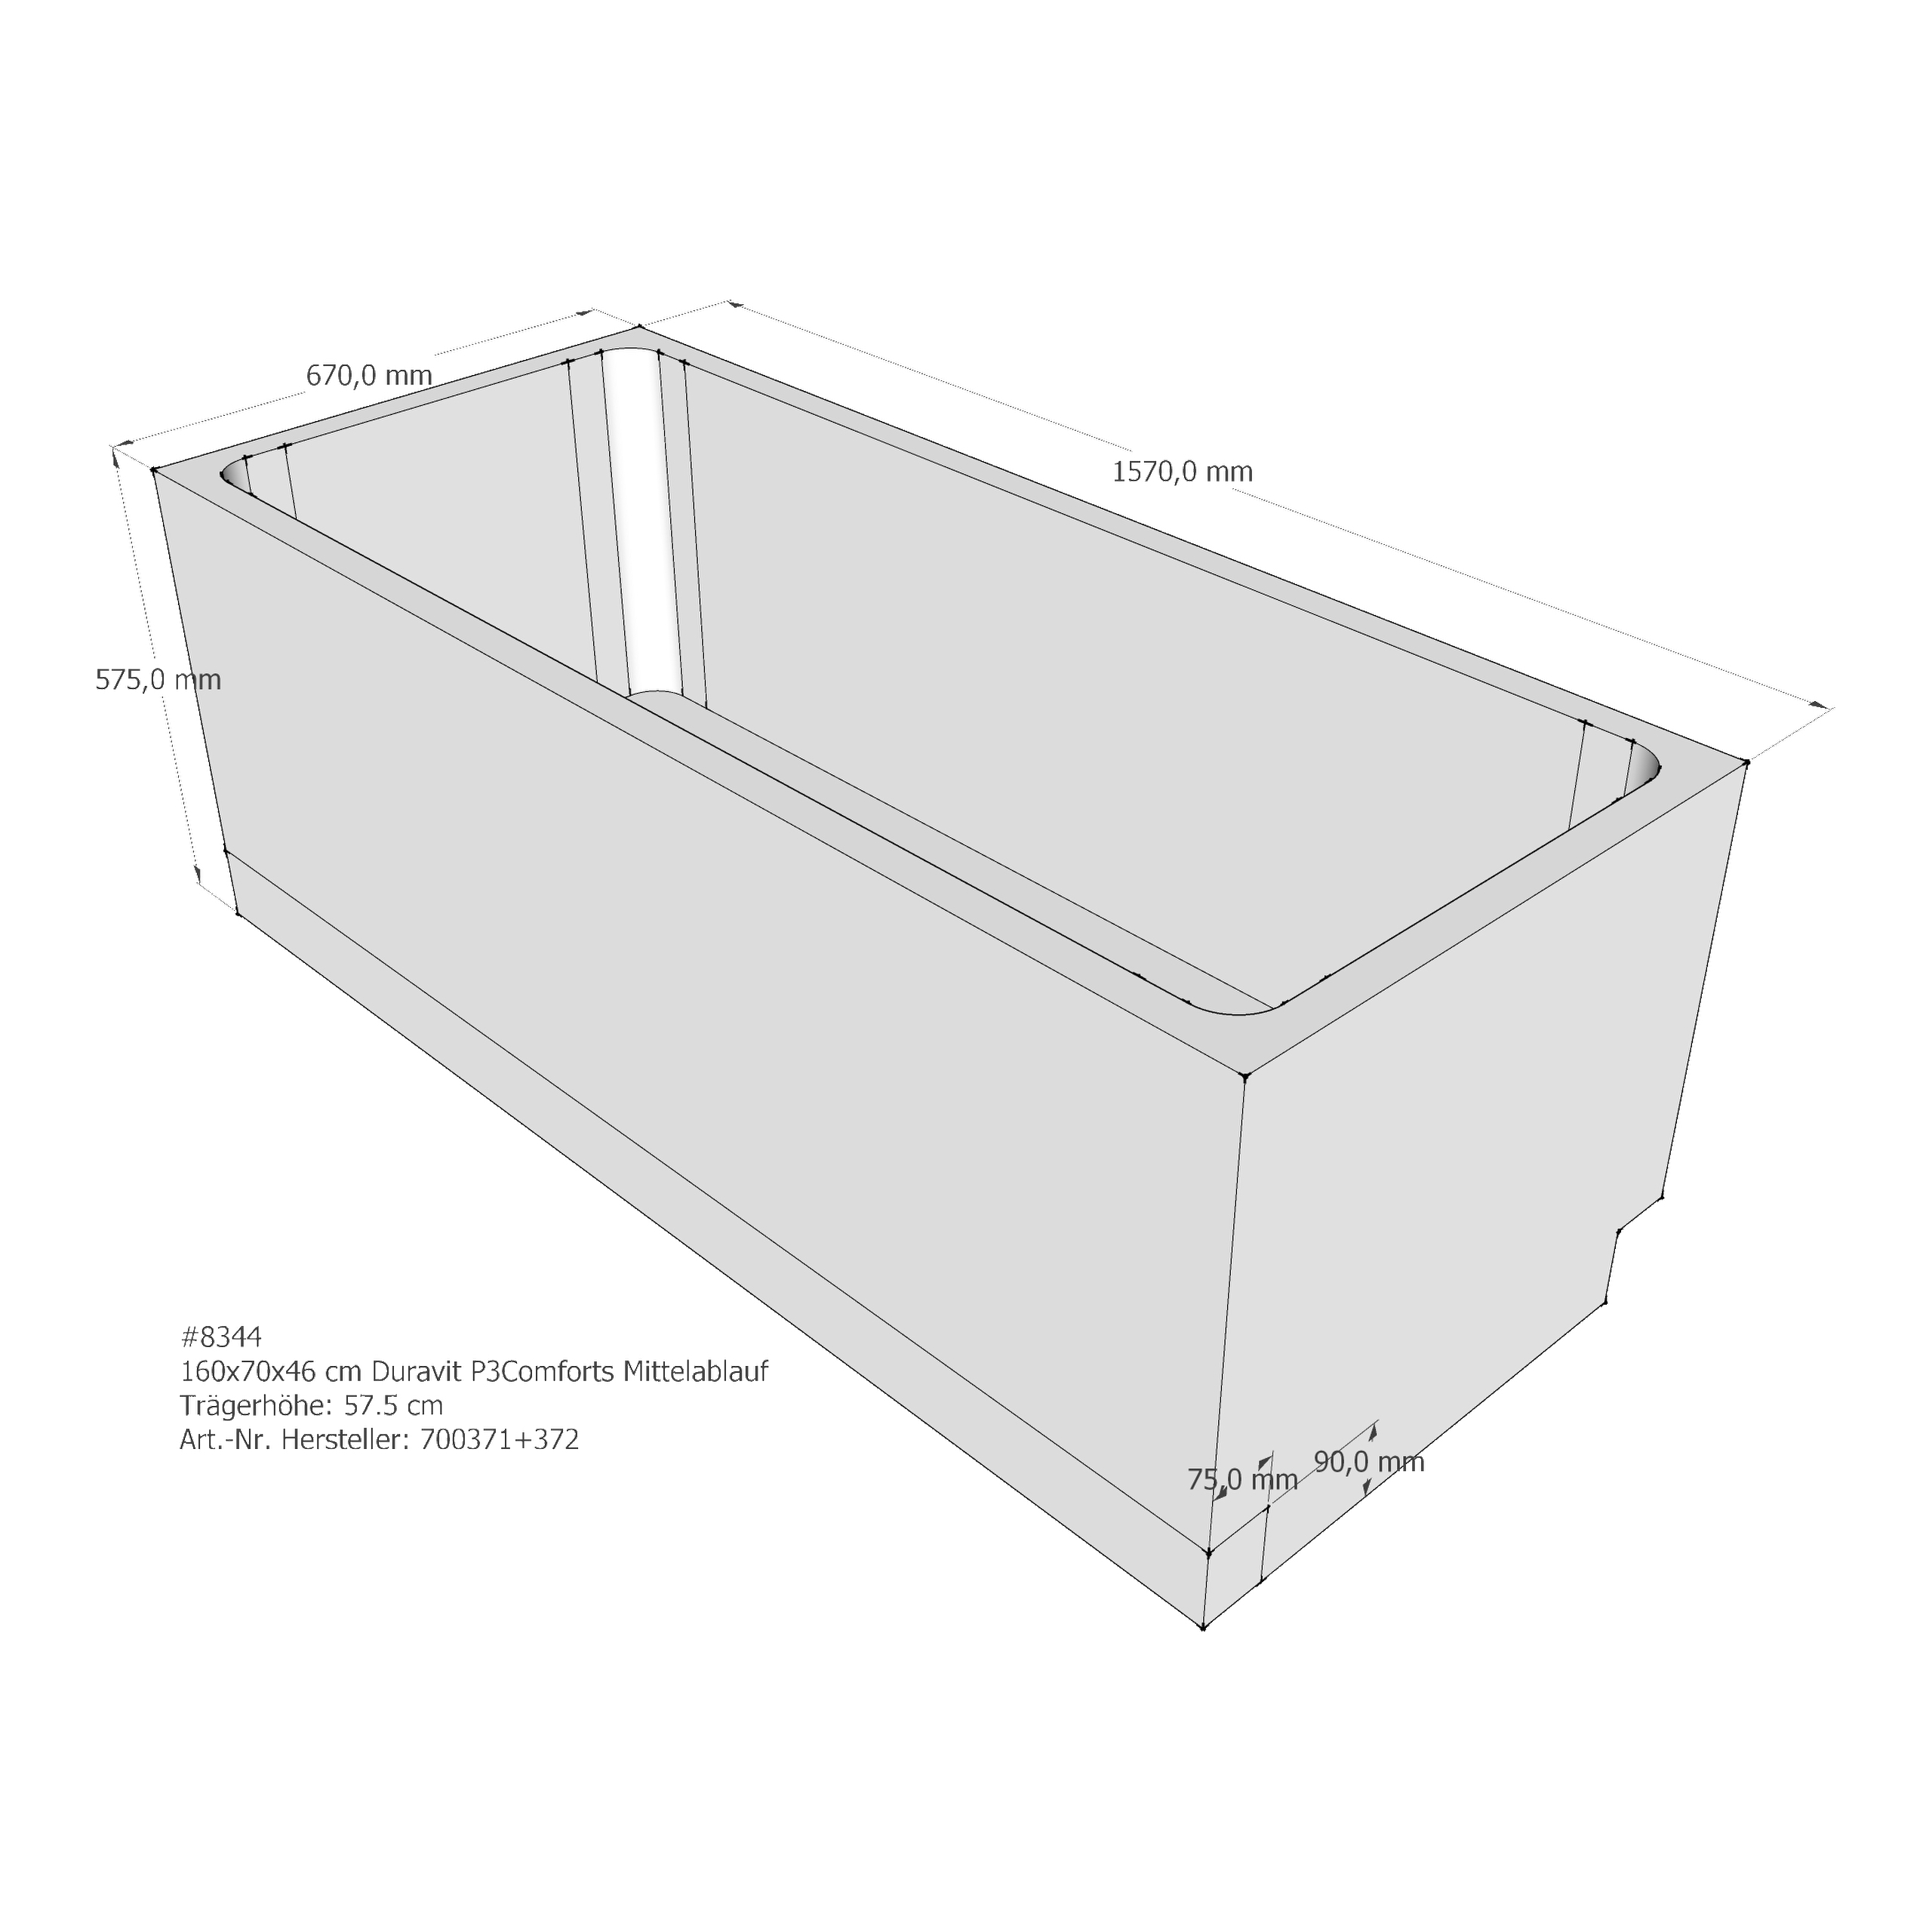 Badewannenträger für Duravit P3 Comforts 160 × 70 × 46 cm